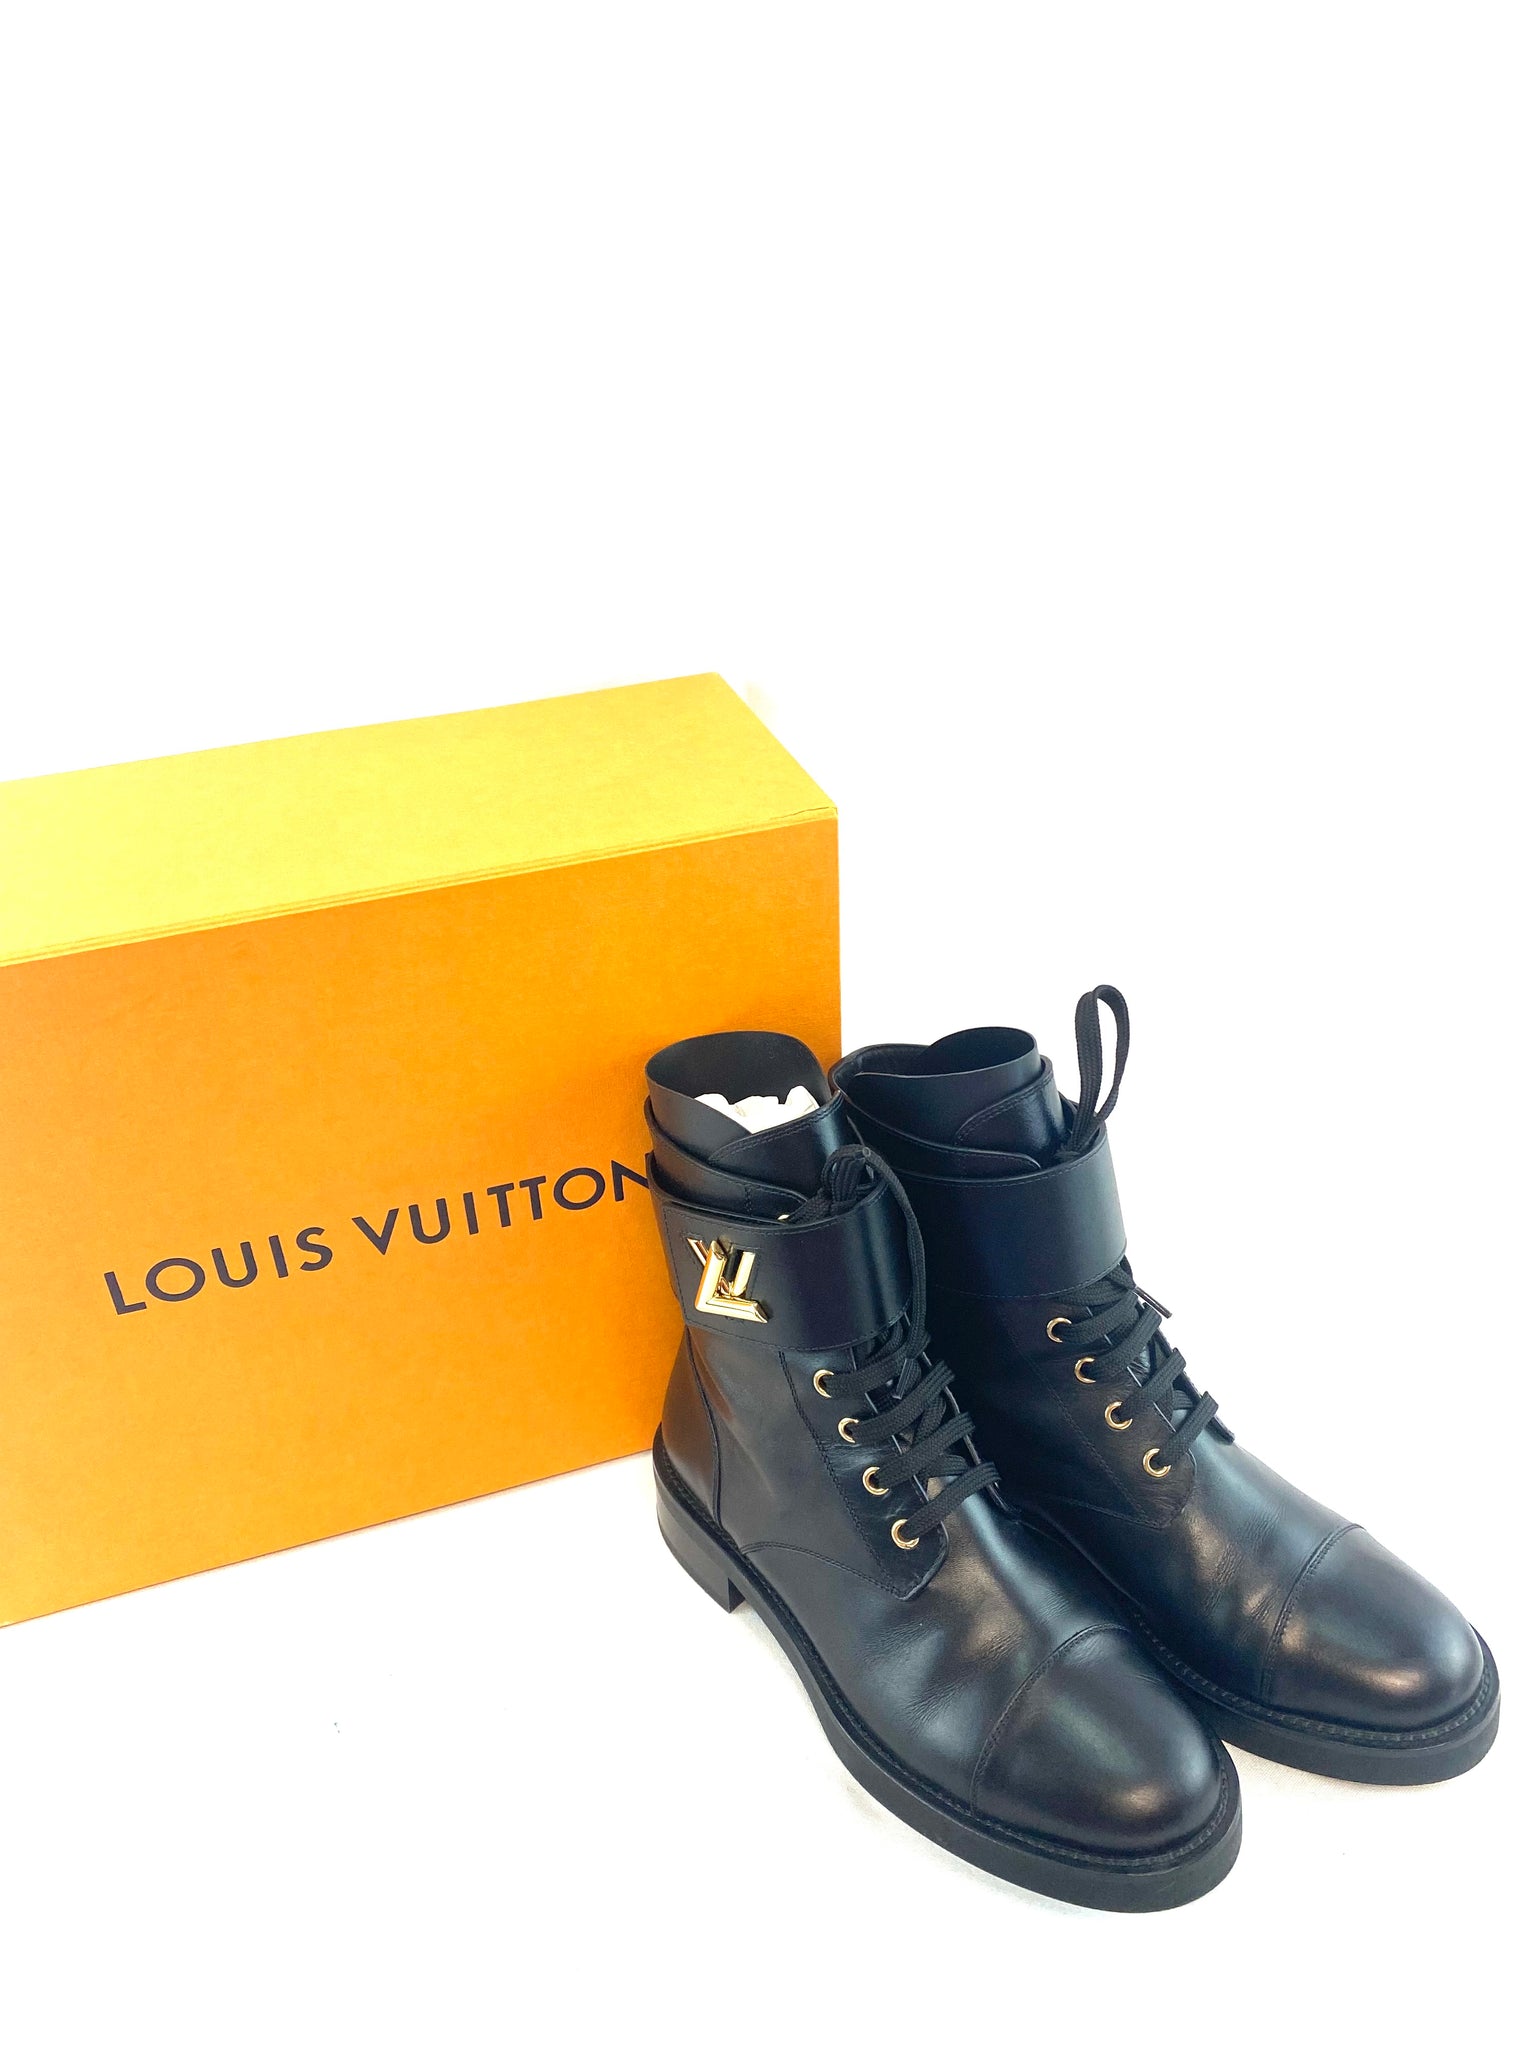 Louis Vuitton Wonderland Ranger boots!